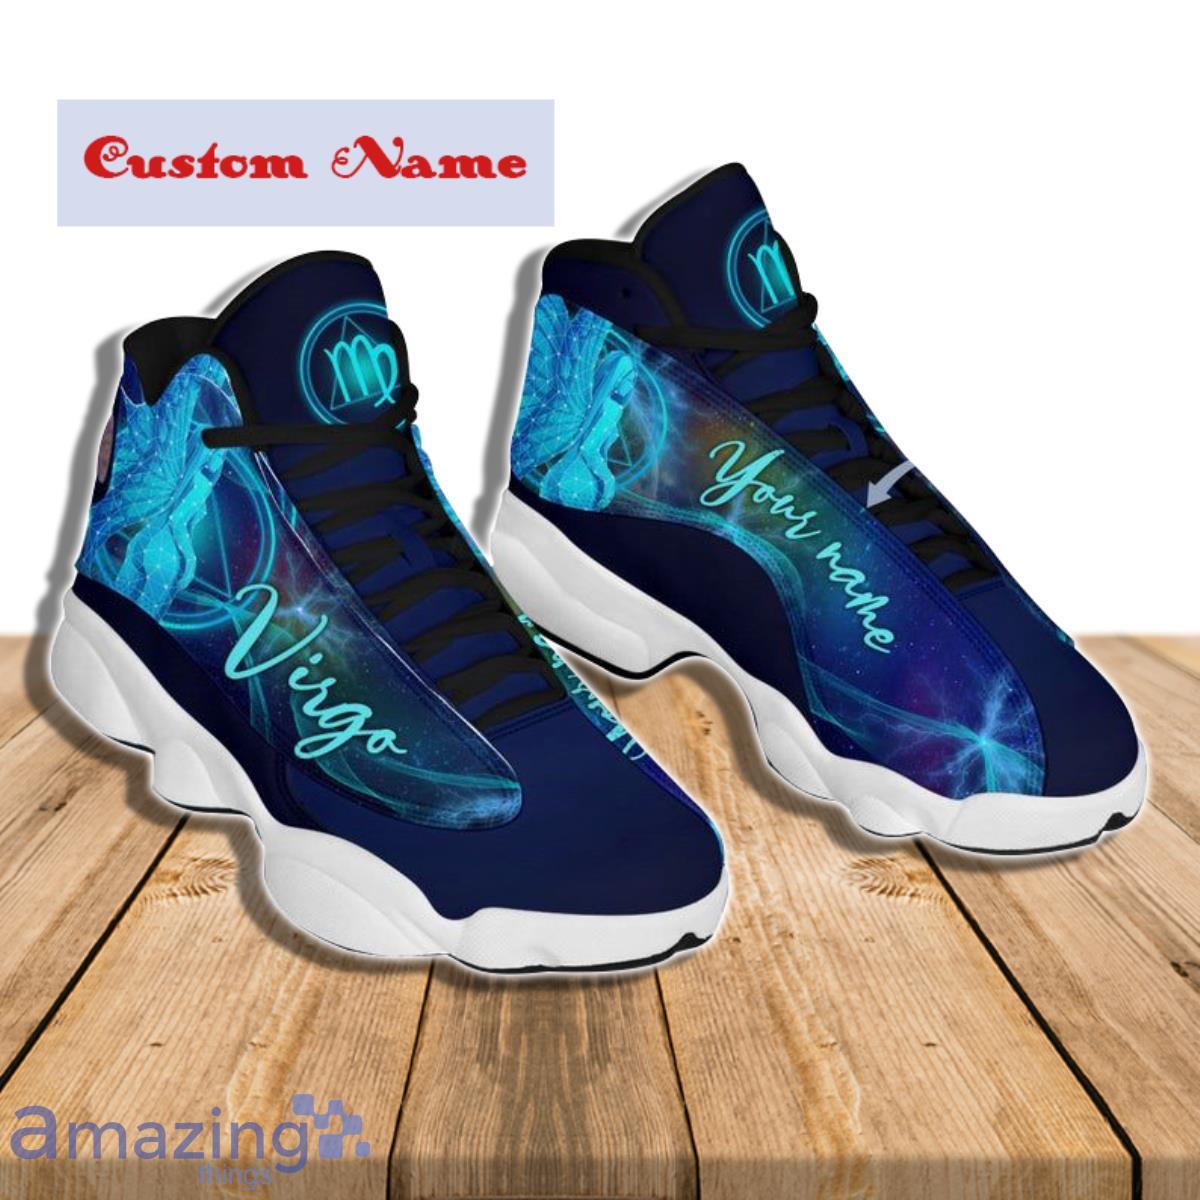 Virgo Air Jordan 13 Custom Name Sneakers Special Gift For Men And